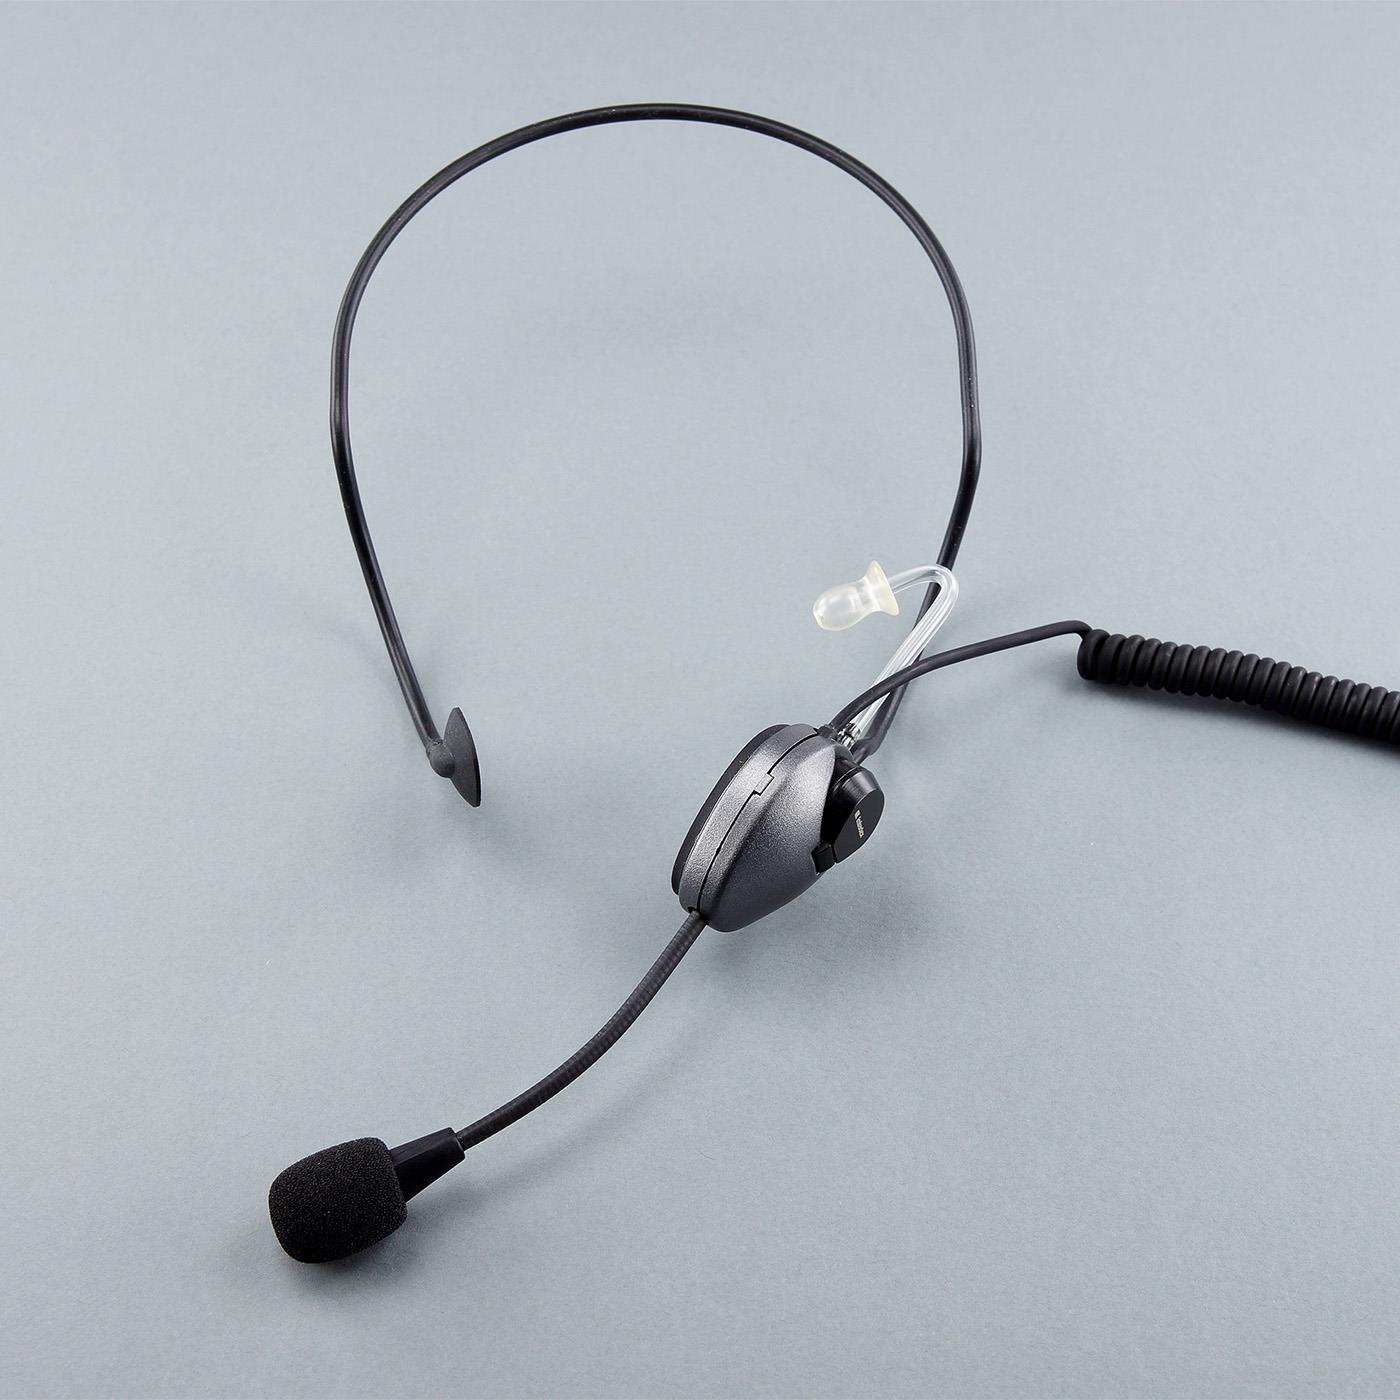 Imtradex NB 1600 filigranes Nackenbügel-Headset mit Schwanenhalsmikrofon, Nexus-Stecker Zum Anschluss an eine PTT-Einheit mit Nexus-Buchse. Bitteseparat bestellen!Inkl. Ohrolive Größe 3 (0110019-266)